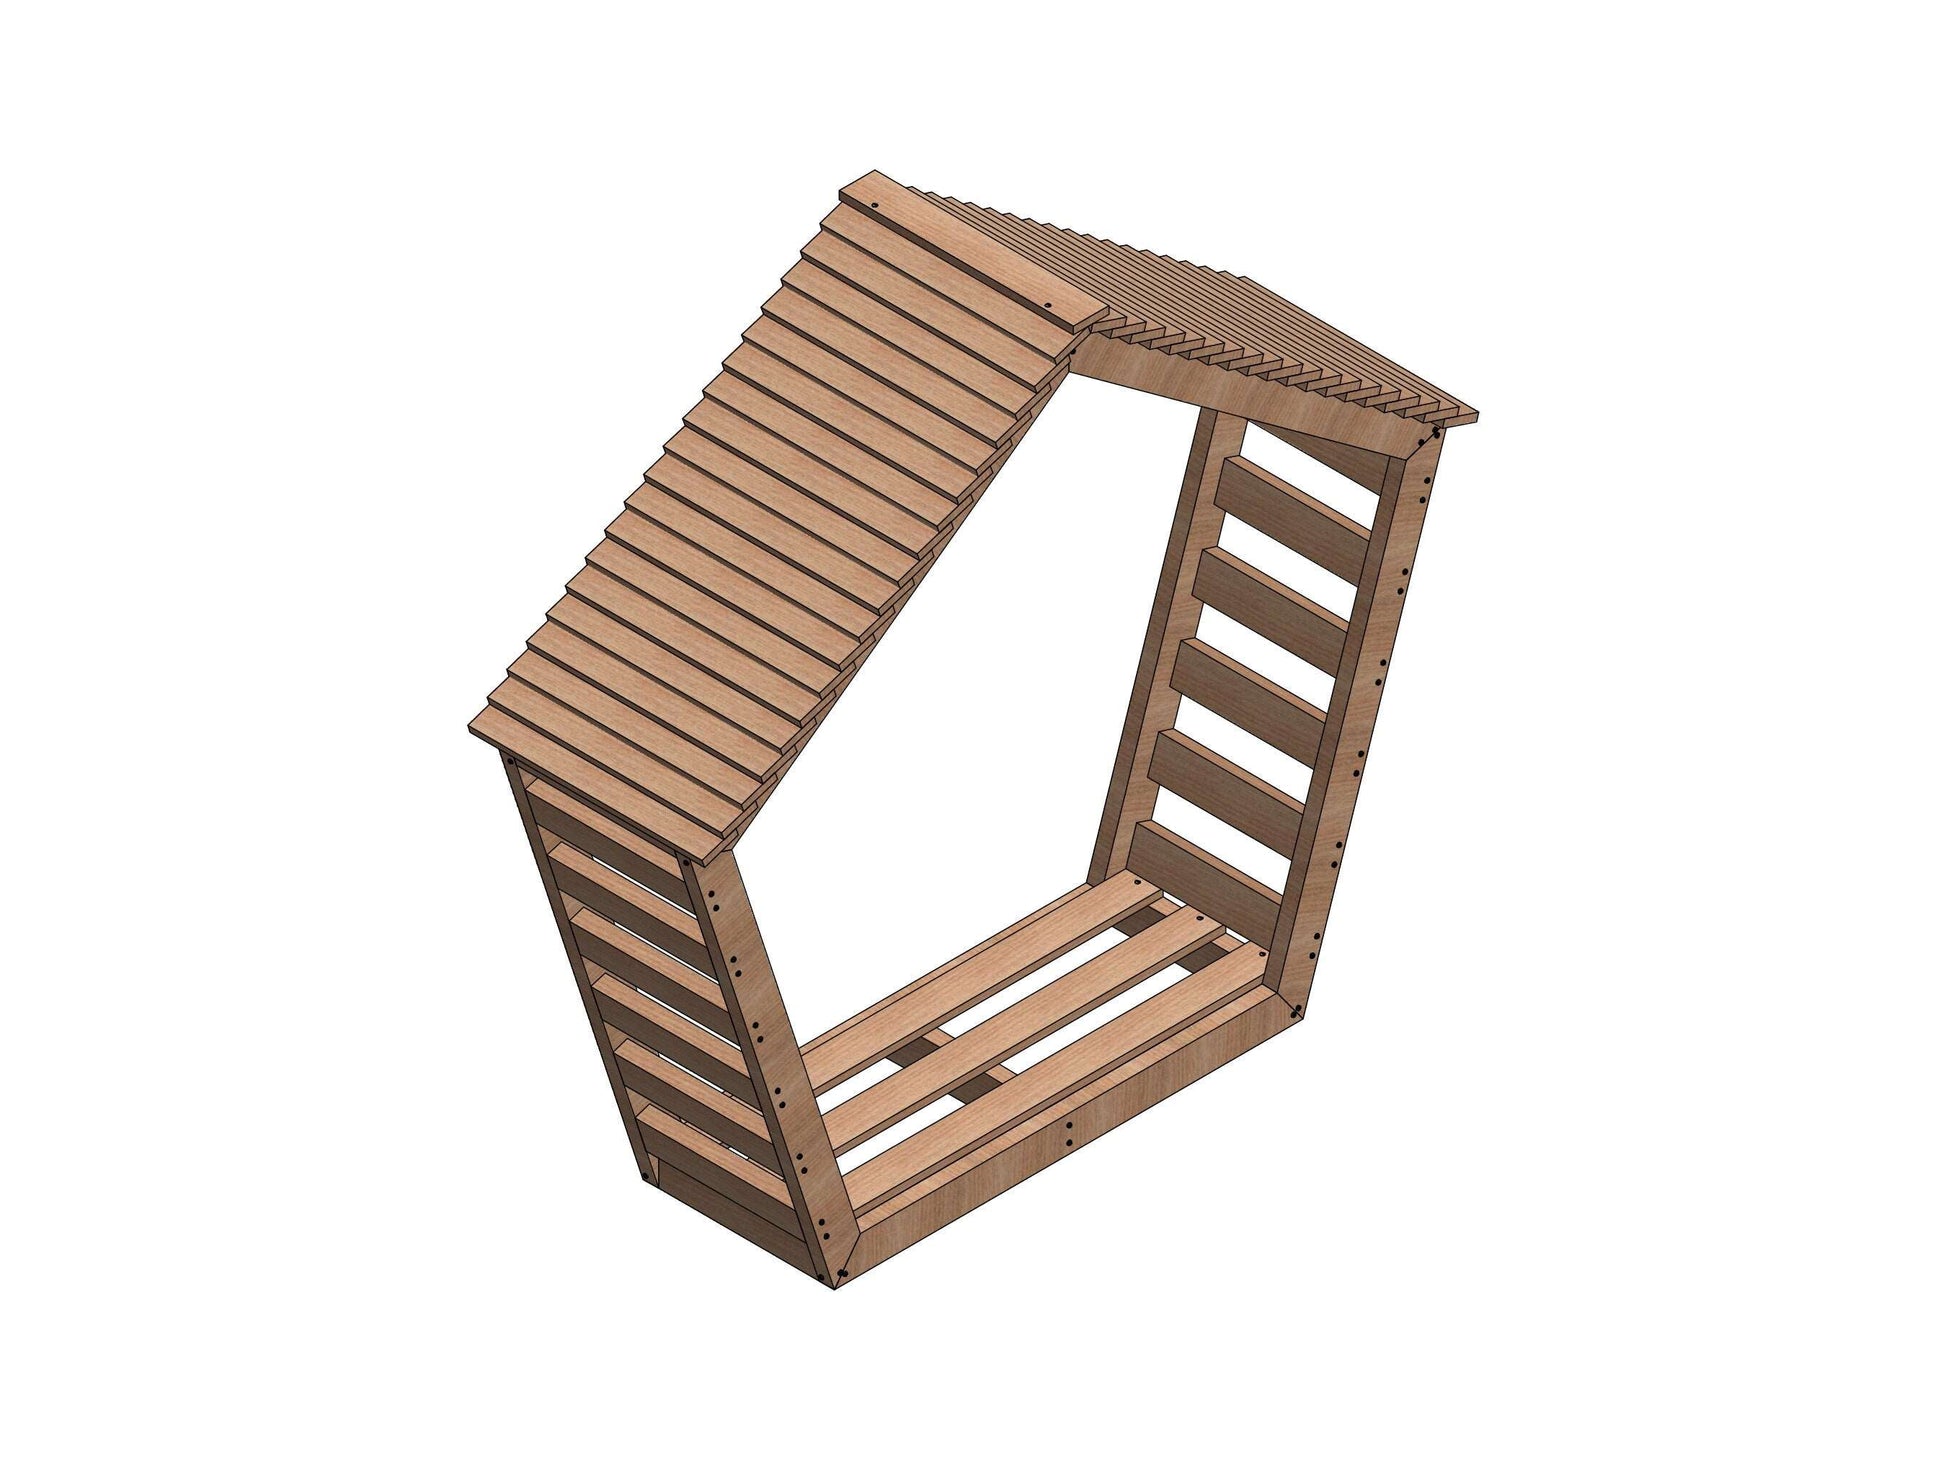 Modern Log Holder Plans- DIY plans for wooden pentagon shed